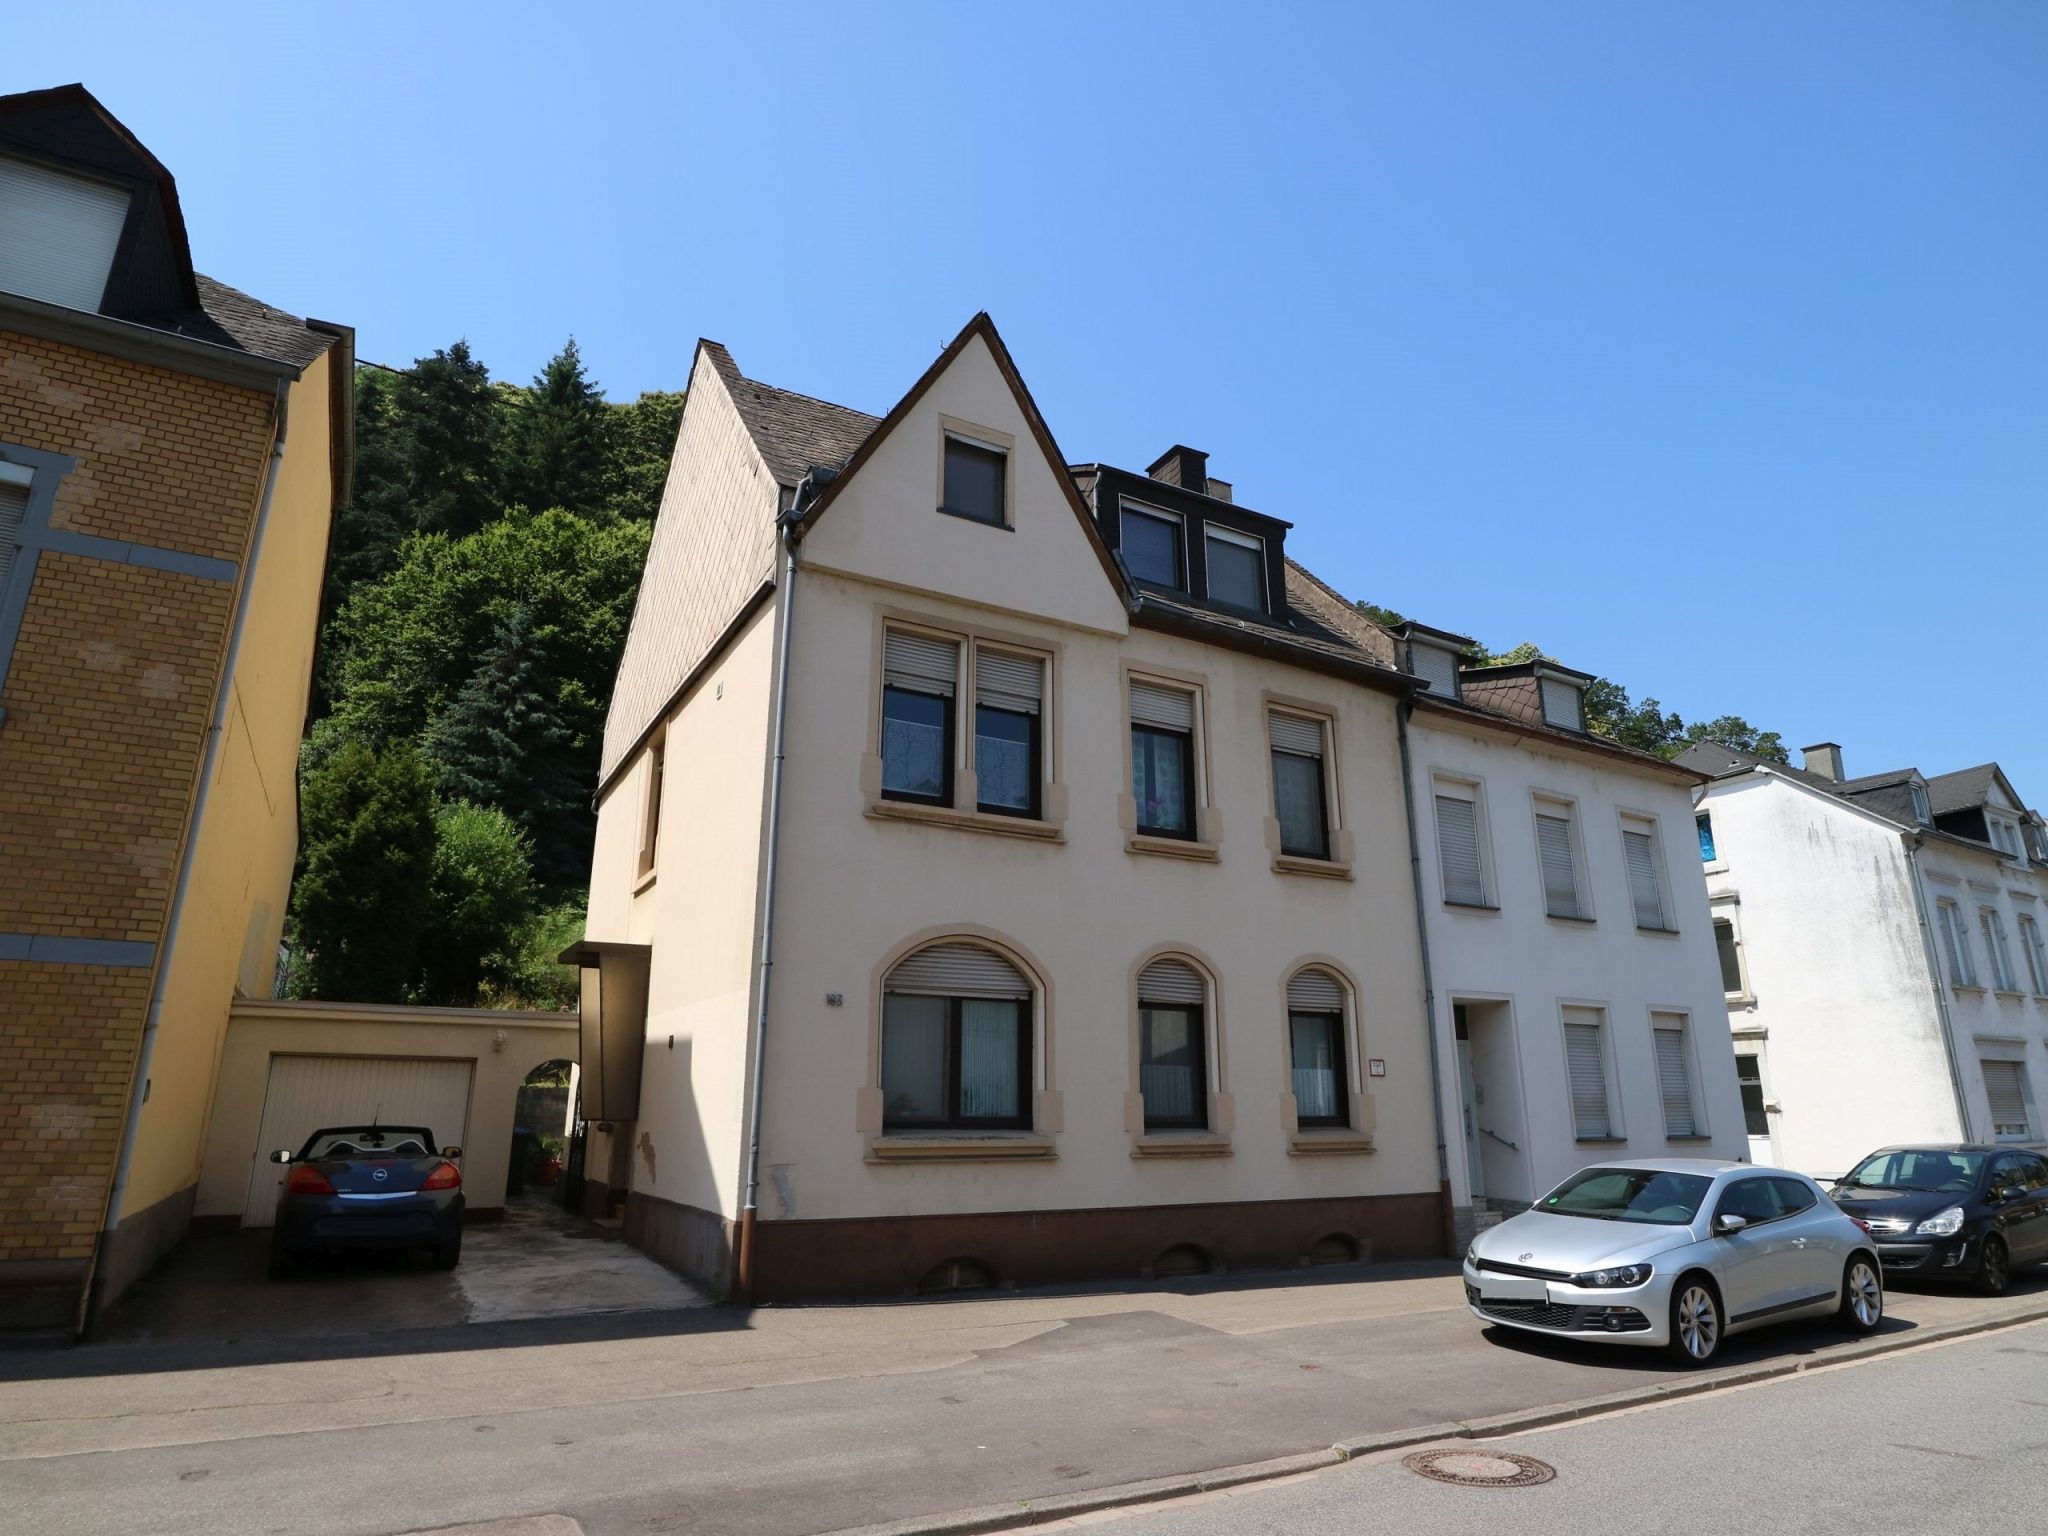 Volksbank Trier Immobilien GmbH - Immobilienangebot - Trier - Zweifamilienhaus - Vielseitige Immobilie für Eigennutzer oder Kapitalanleger